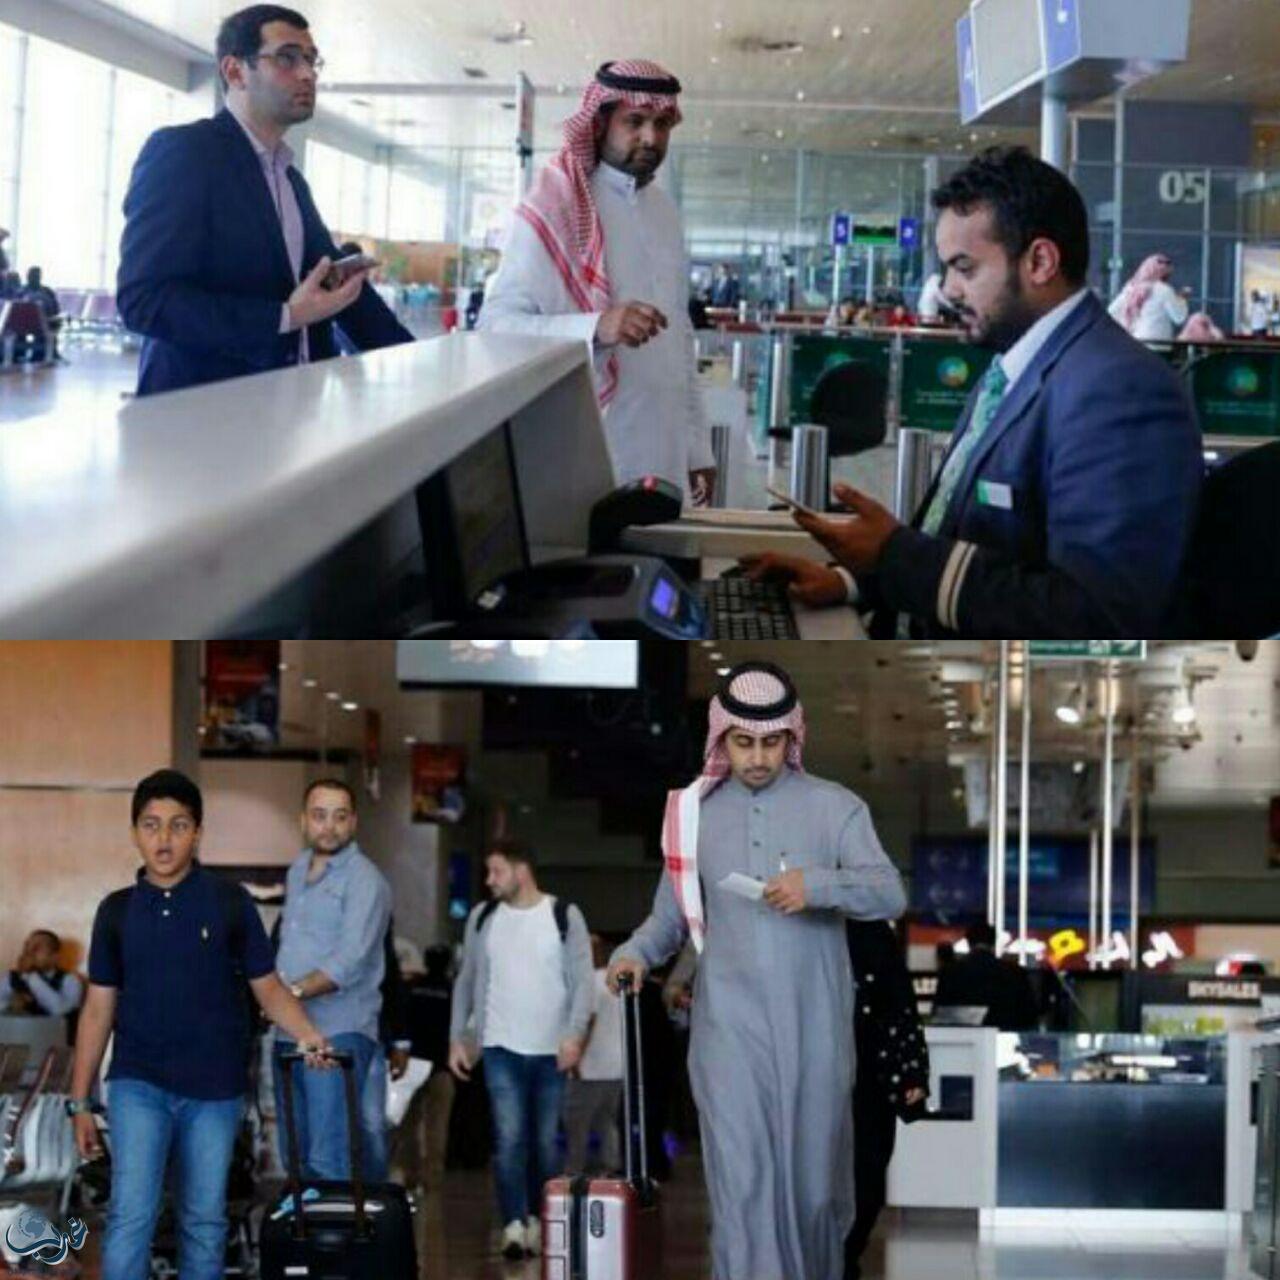 تغريدات لـ”مطار جدة” ...تُلامس المشاعر وتترك طابعاً إيجابياً في نفوس المسافرين